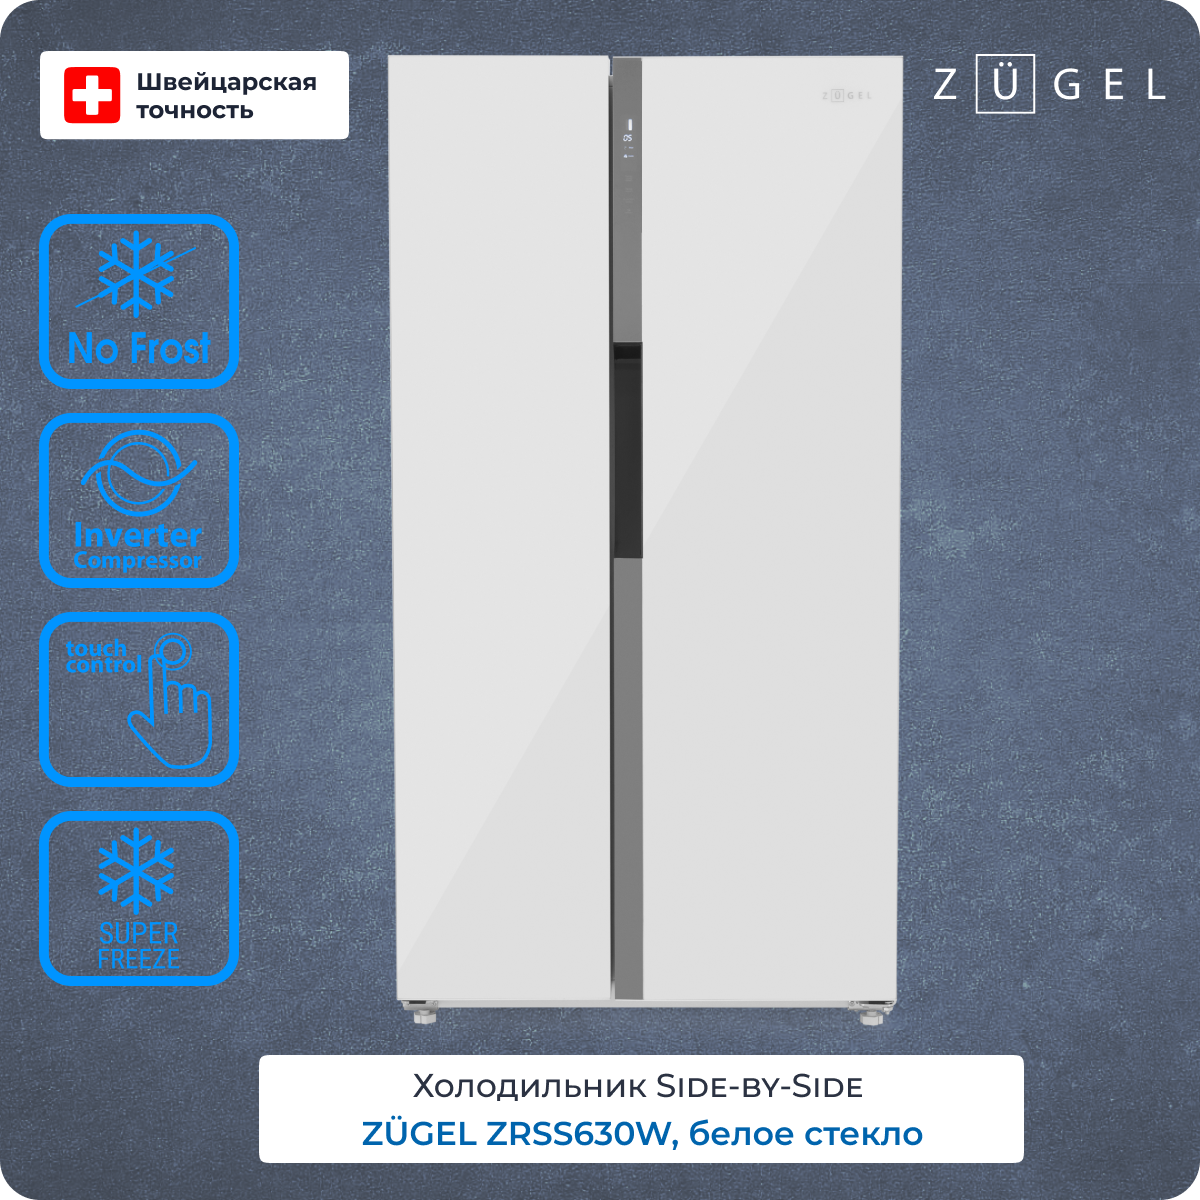 Холодильник ZUGEL ZRSS630W белый холодильник side by side zugel zrss630b